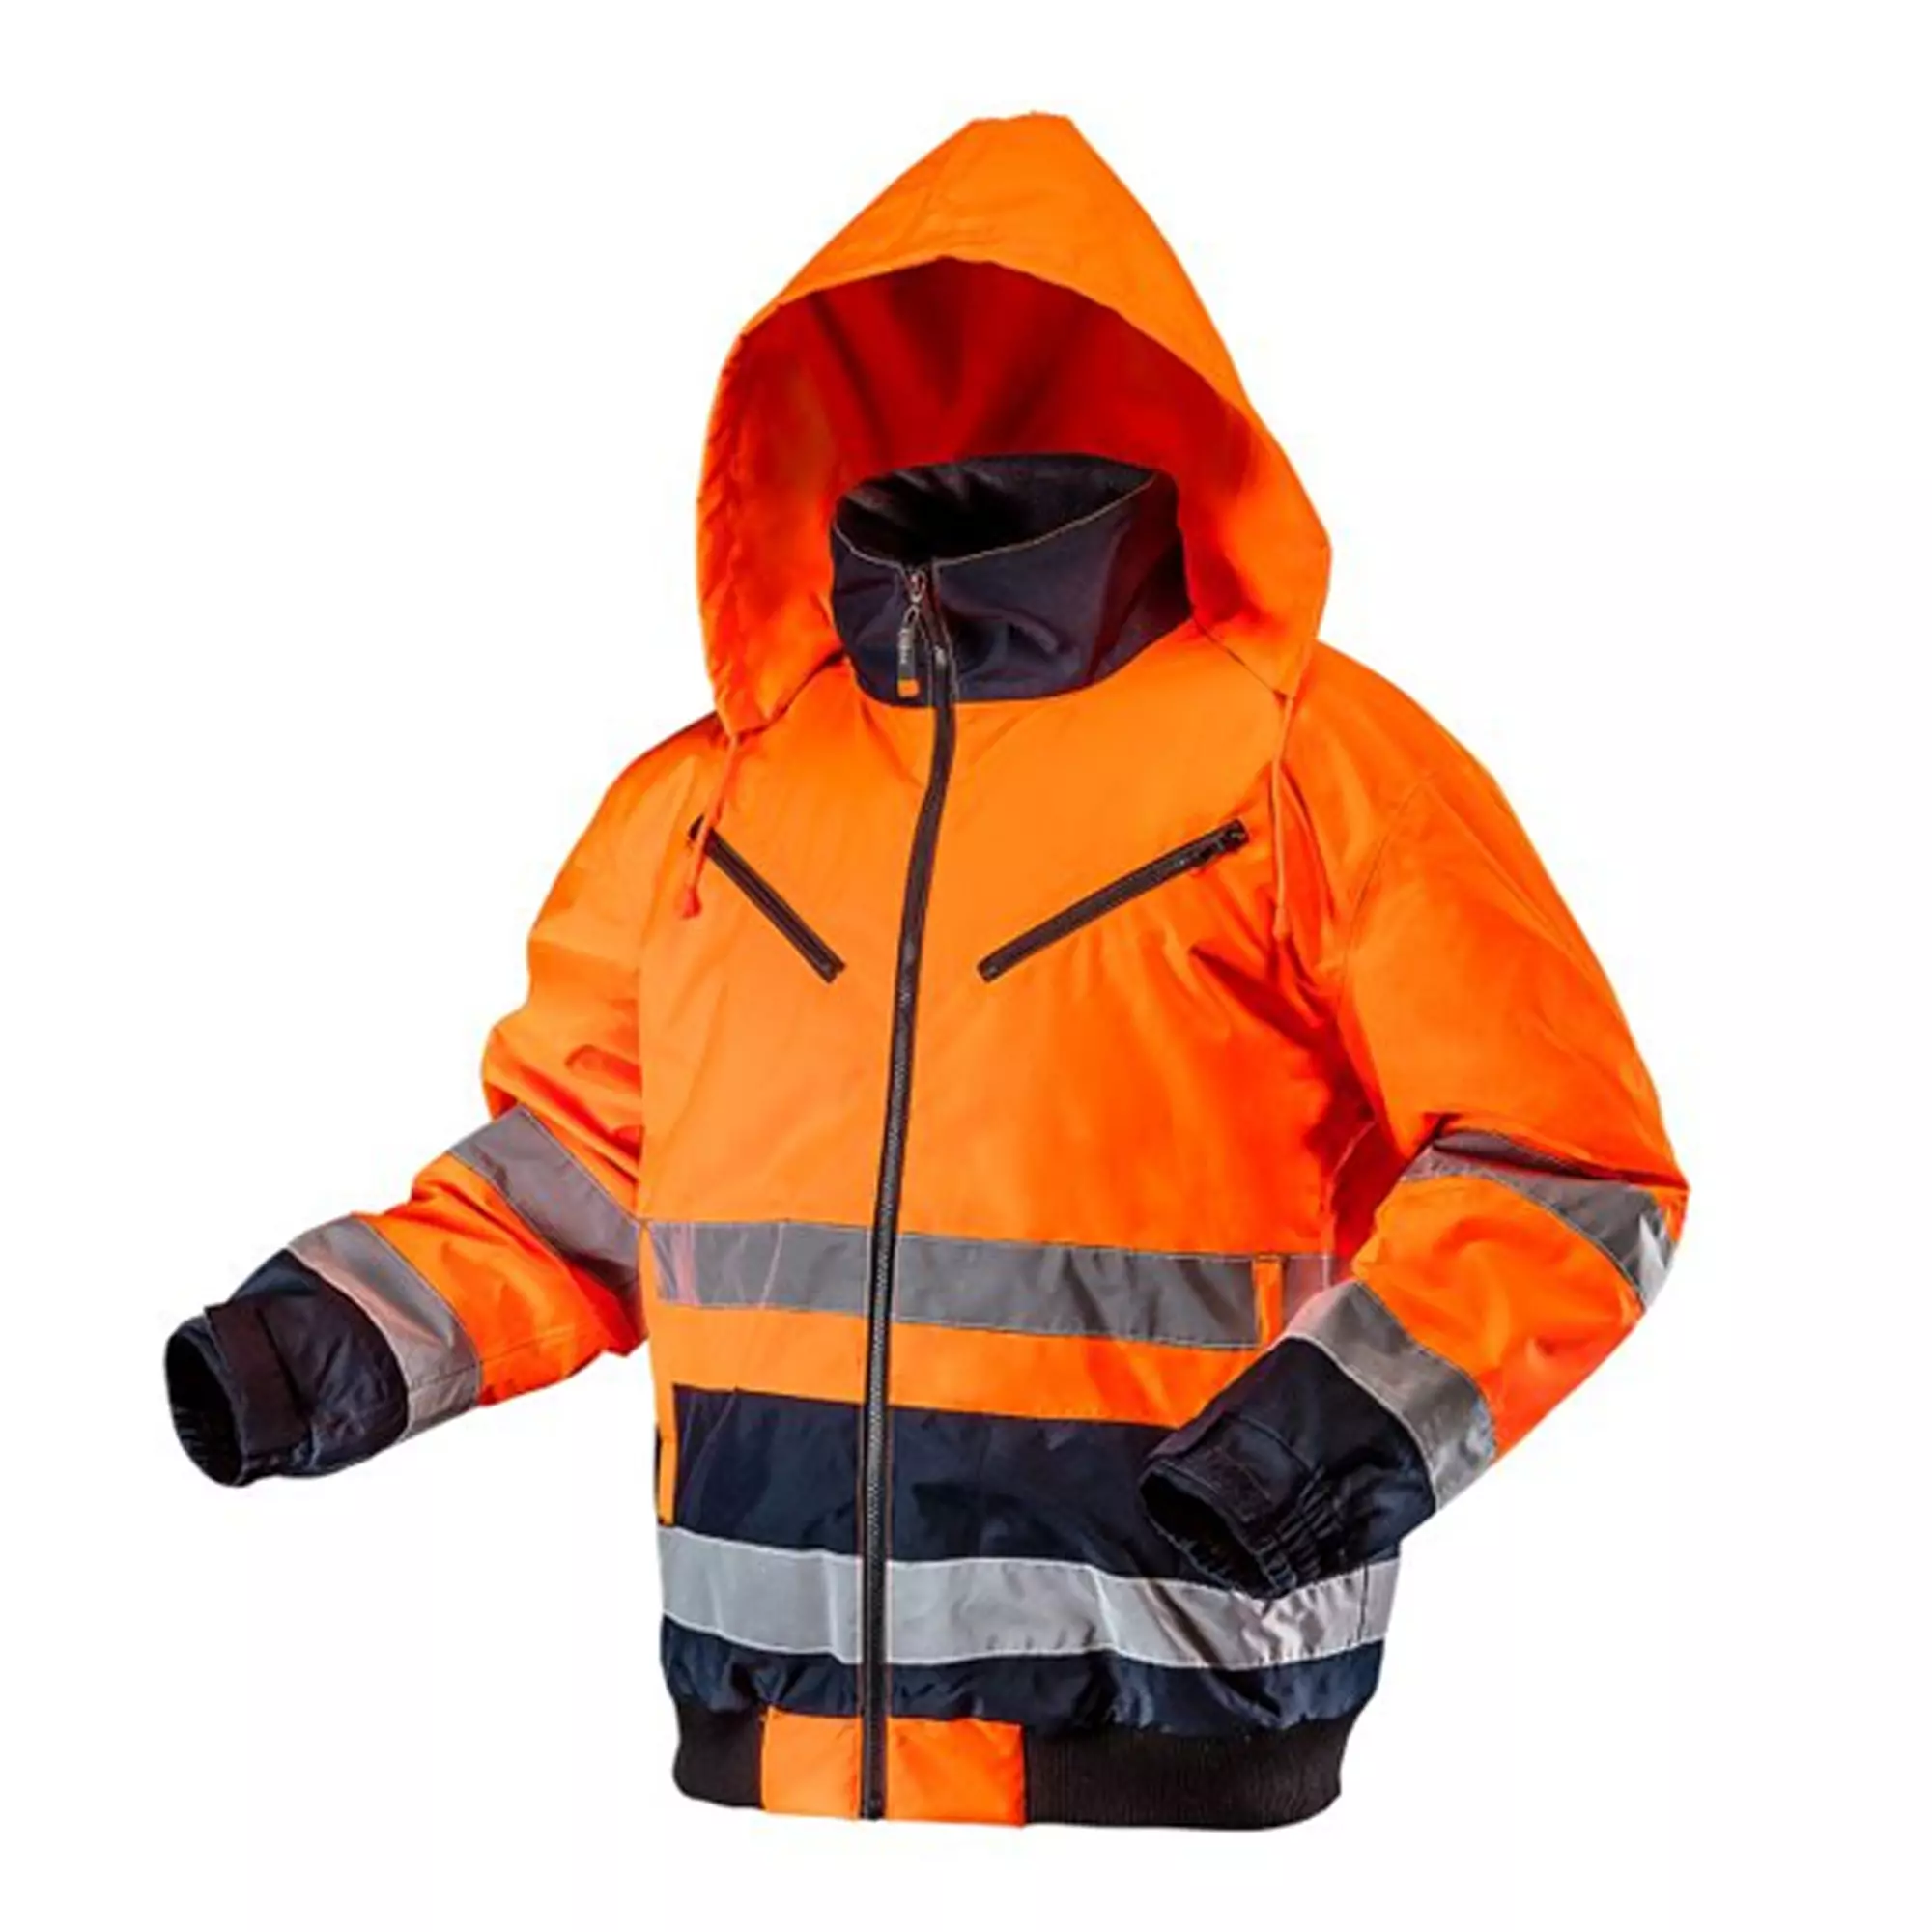 Куртка утепленная световозвращающая NEO TOOLS, оранжевая, размер XXXL (81-711-XXXL)